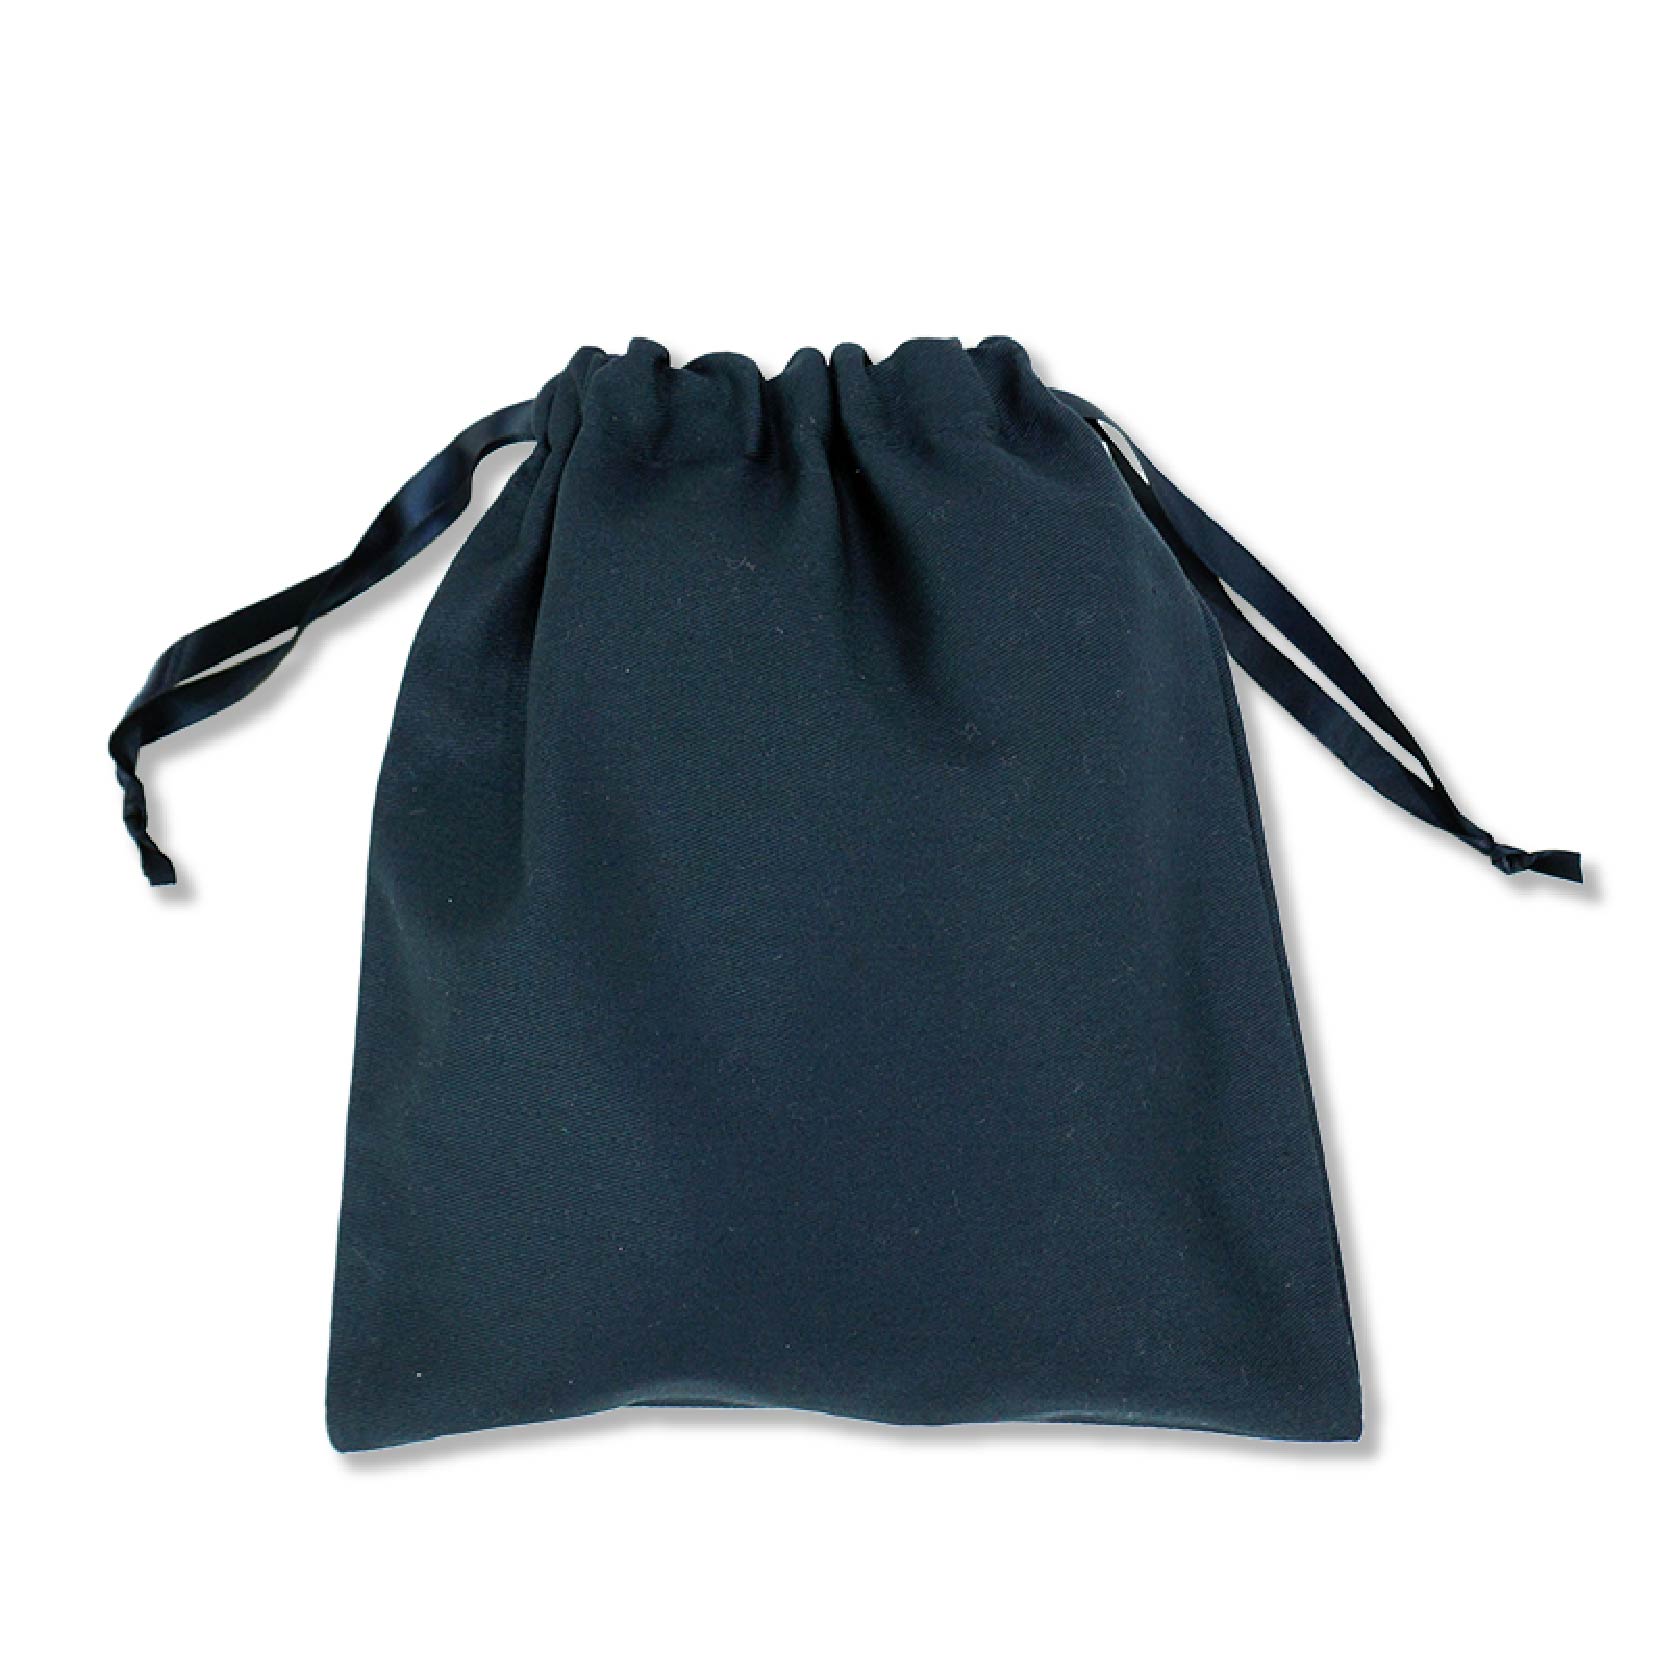 厂家现货批发防水尼龙袋抽绳双肩背包束口袋子涤纶袋子定制logo-阿里巴巴